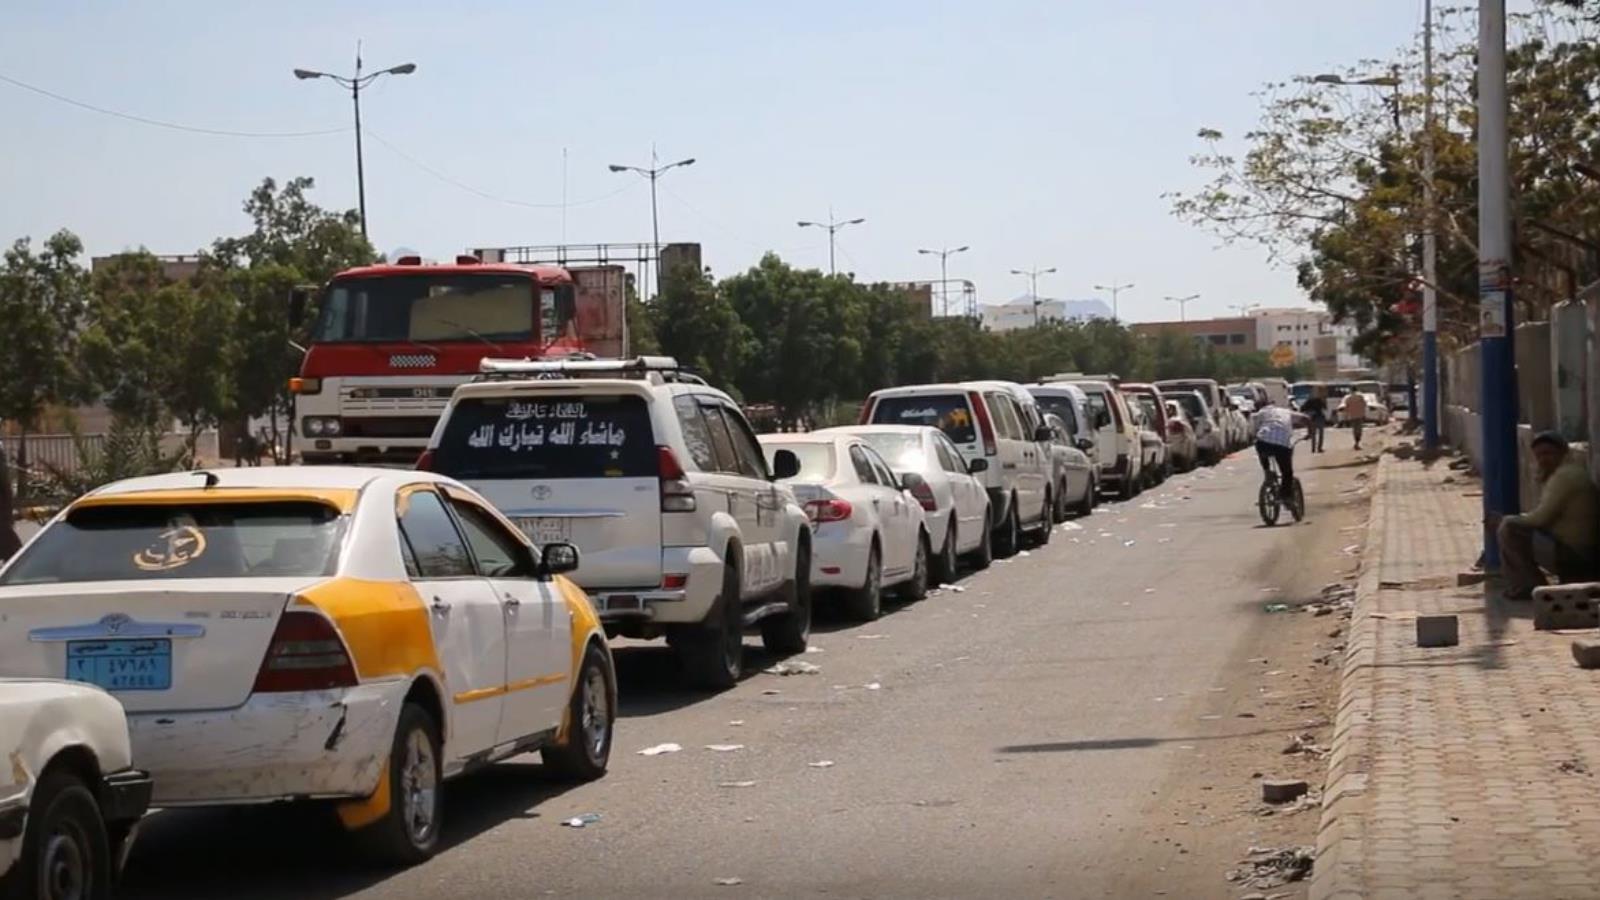 ‪سيارات تنتظر التزود بالوقود بمدينة عدن‬ سيارات تنتظر التزود بالوقود بمدينة عدن (الجزيرة)